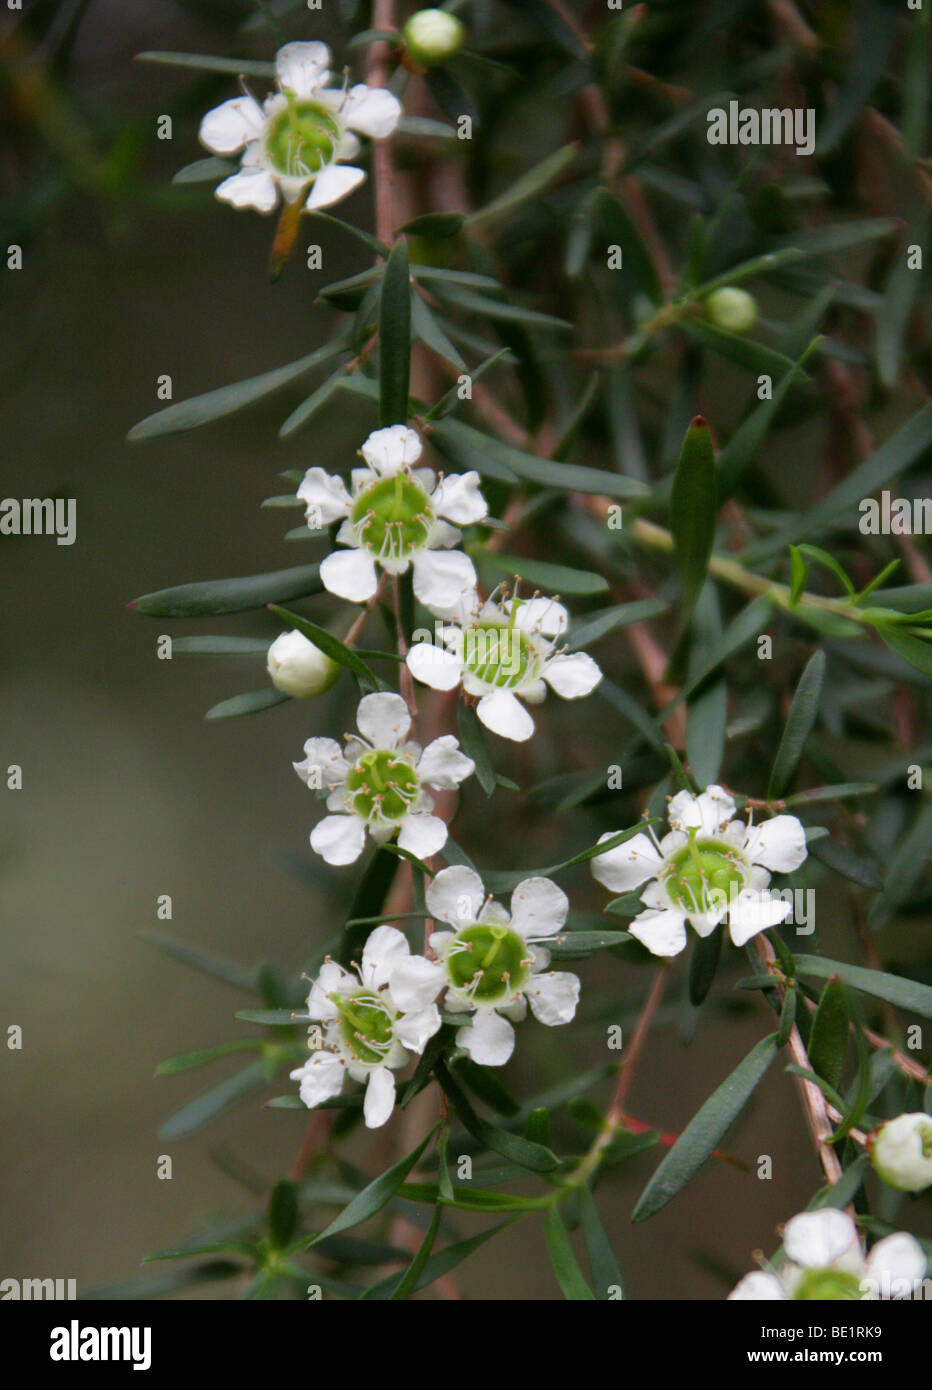 Flowers of the Tea Tree, Leptospermum polygalifolium subsp. transmontanum, Myrtaceae, Australia. Stock Photo